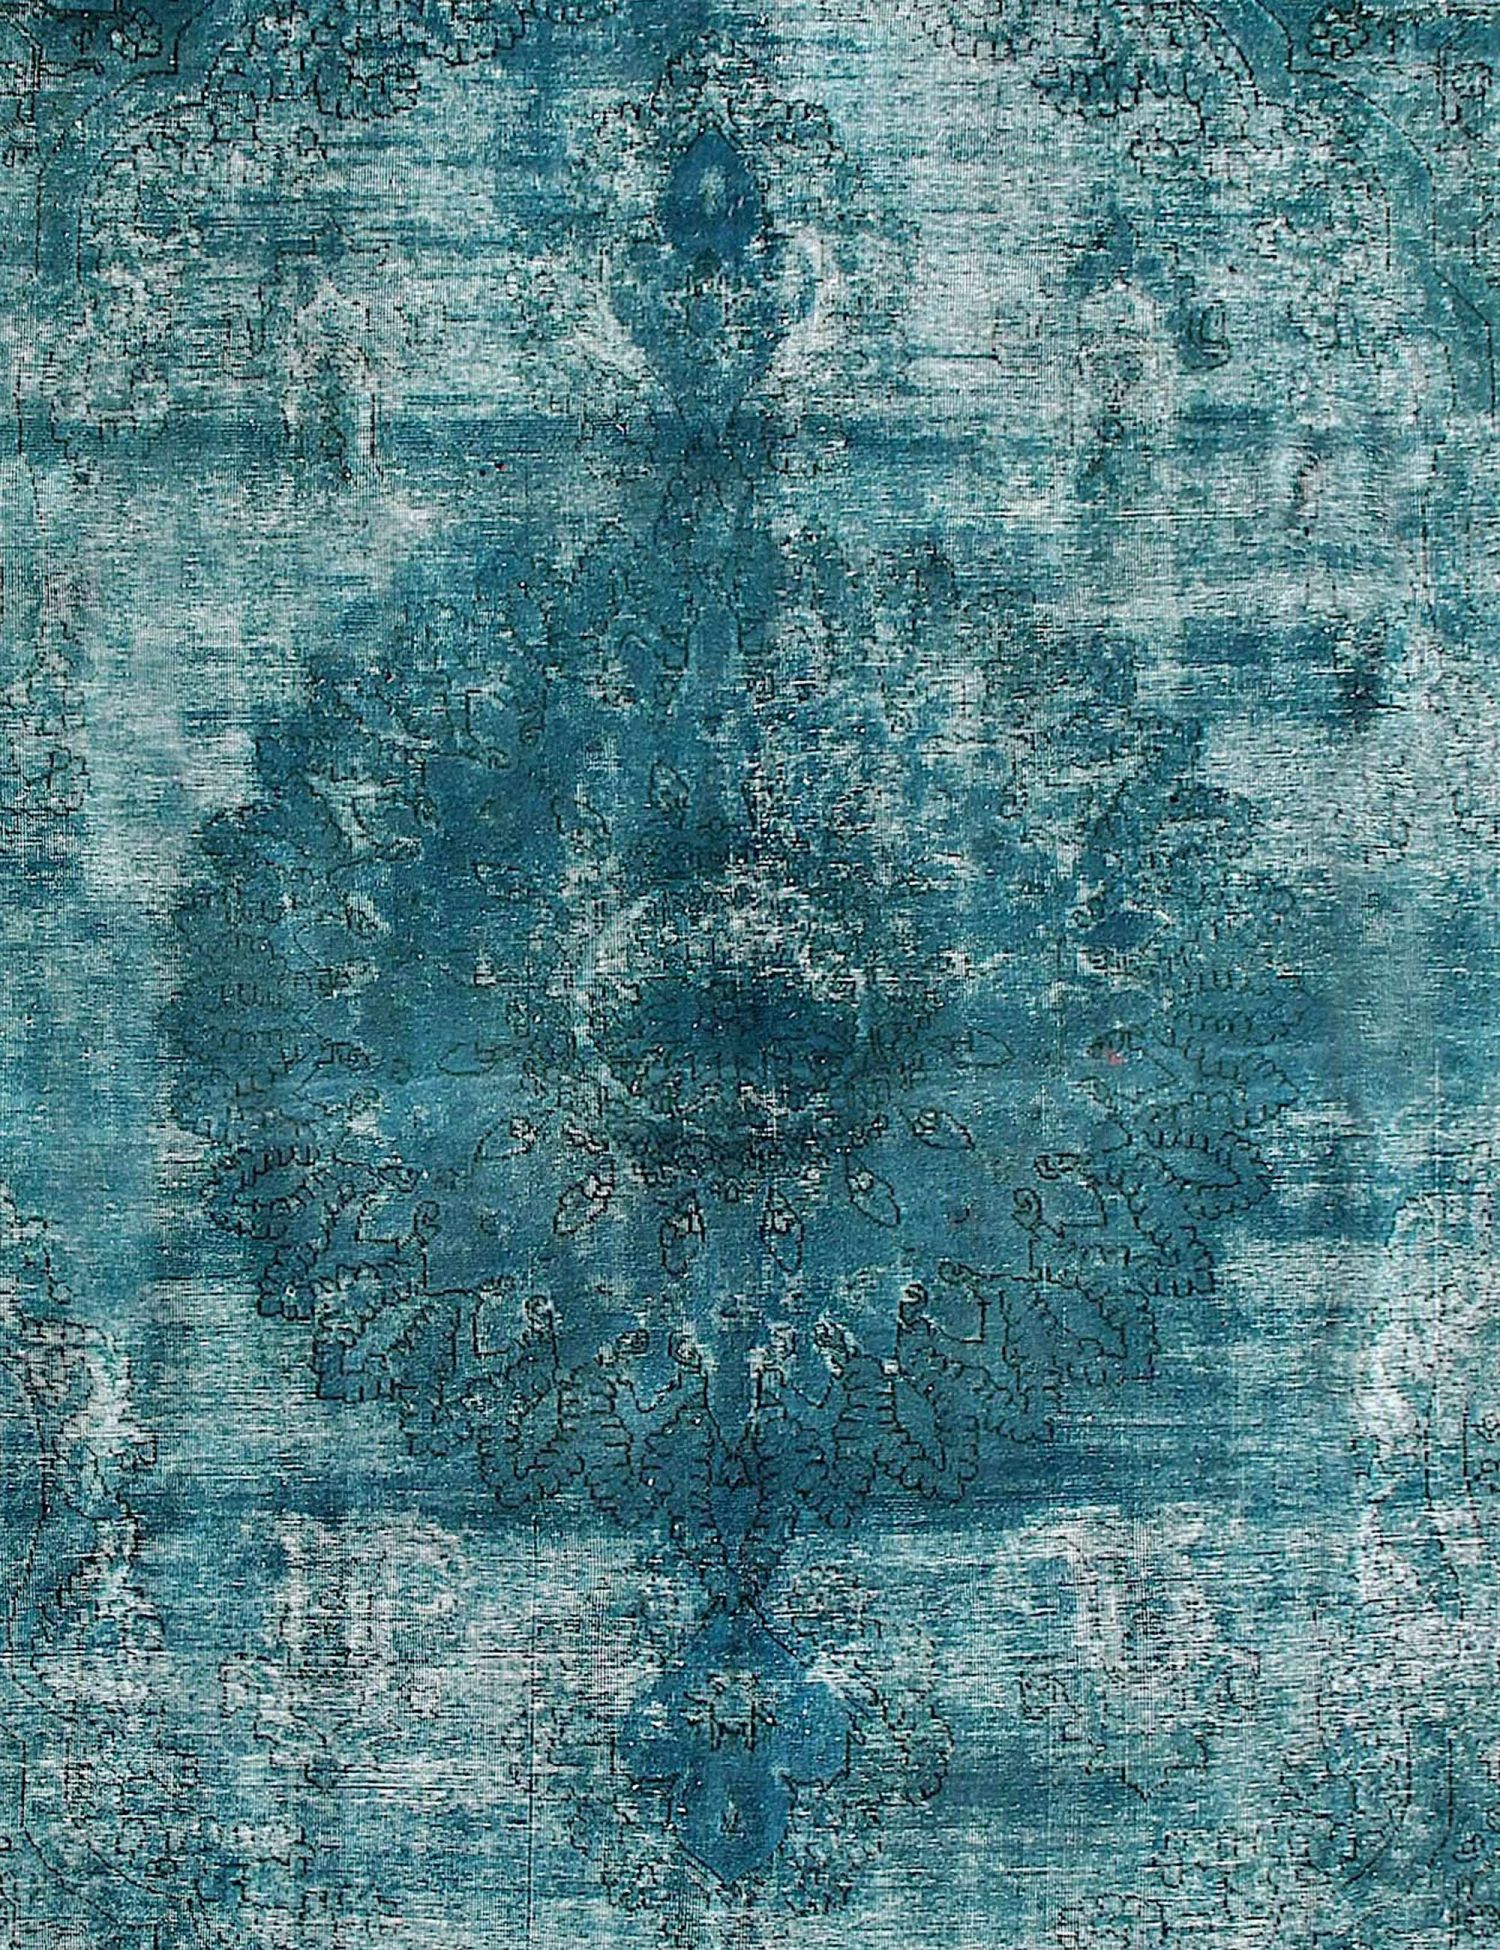 Persischer Vintage Teppich  türkis <br/>273 x 273 cm